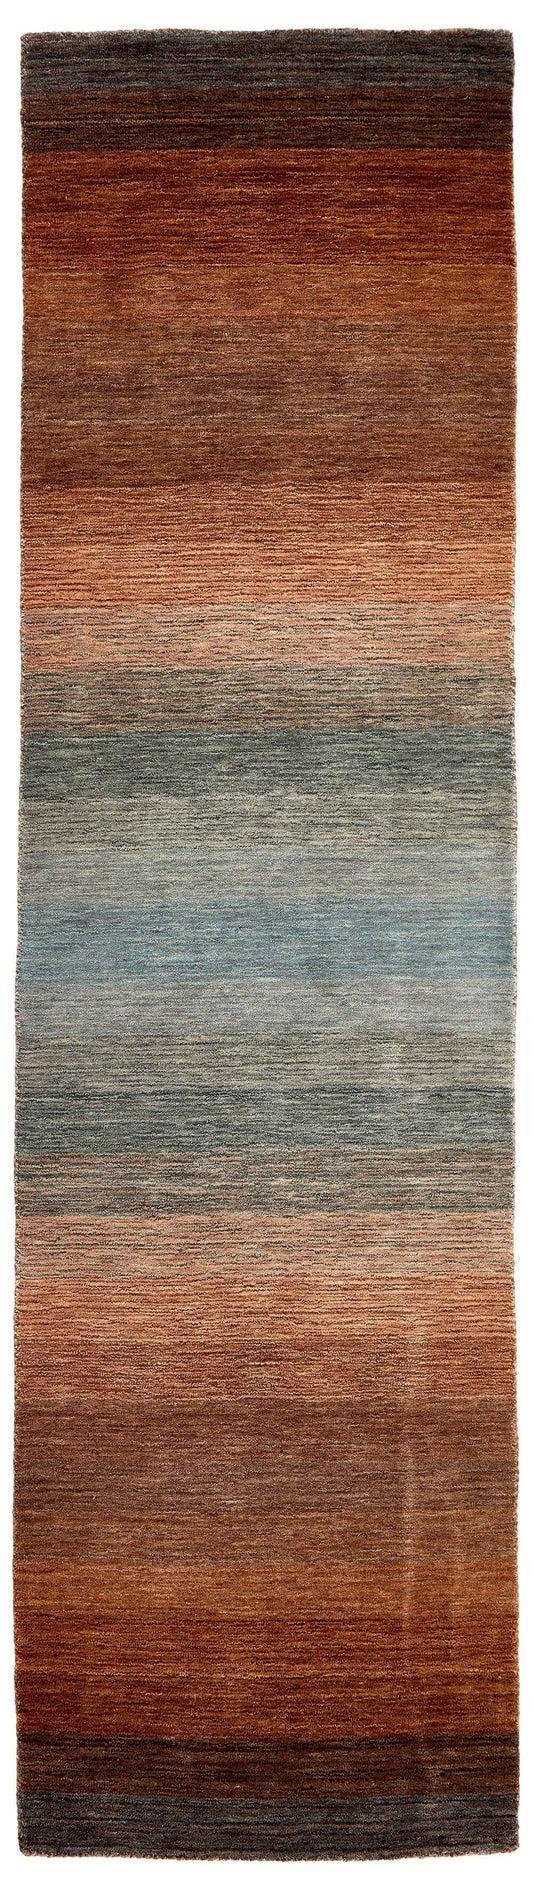 200x80 cm  Indian Wool Blue Rug-HLC200111, Dark Brown Multi